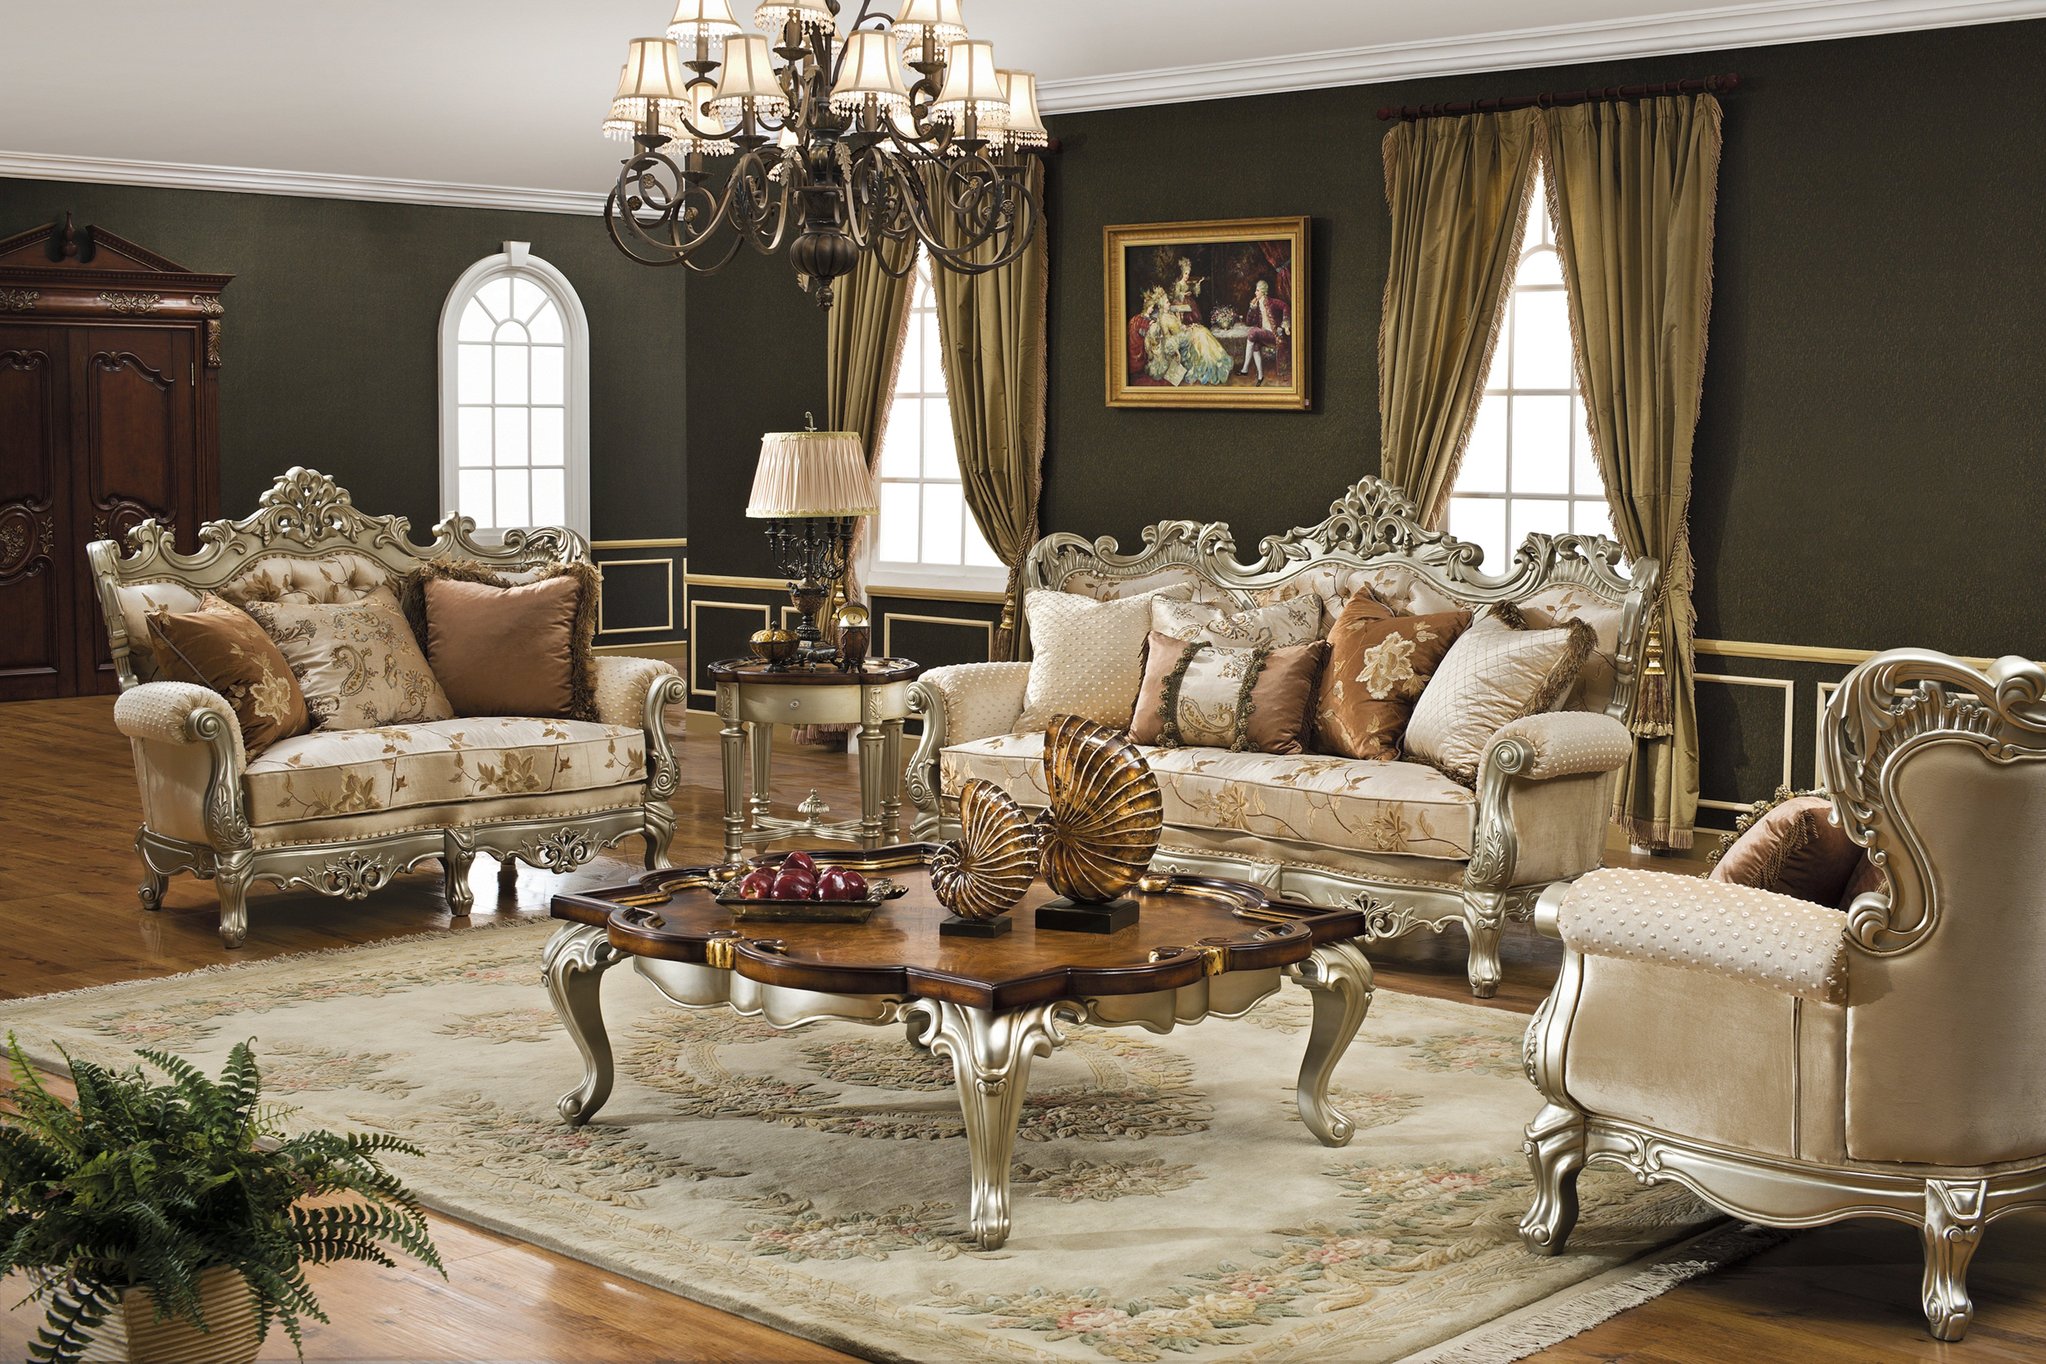 Glamorous and elegant living room